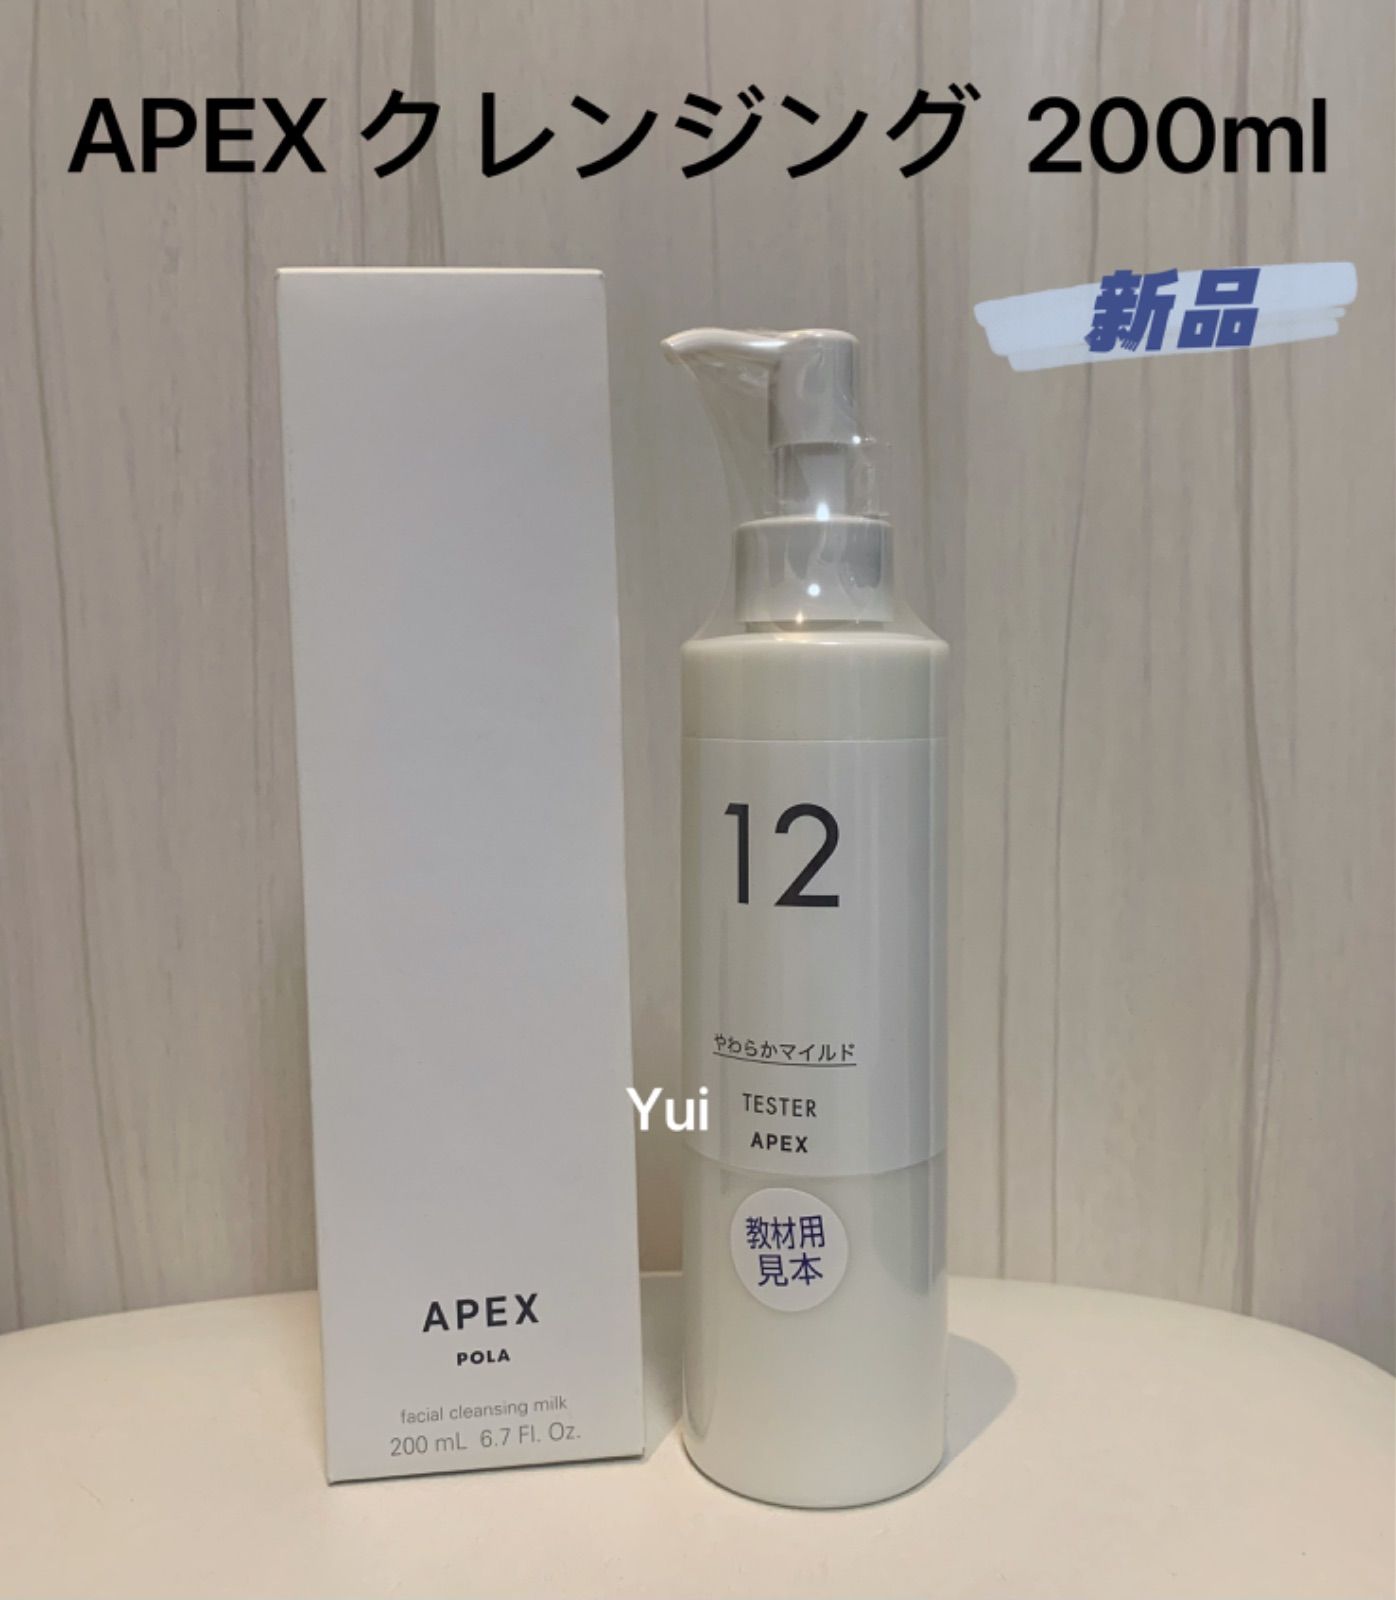 コスメ/美容POLA APEX クレンジングミルク 1232 - クレンジング/メイク 